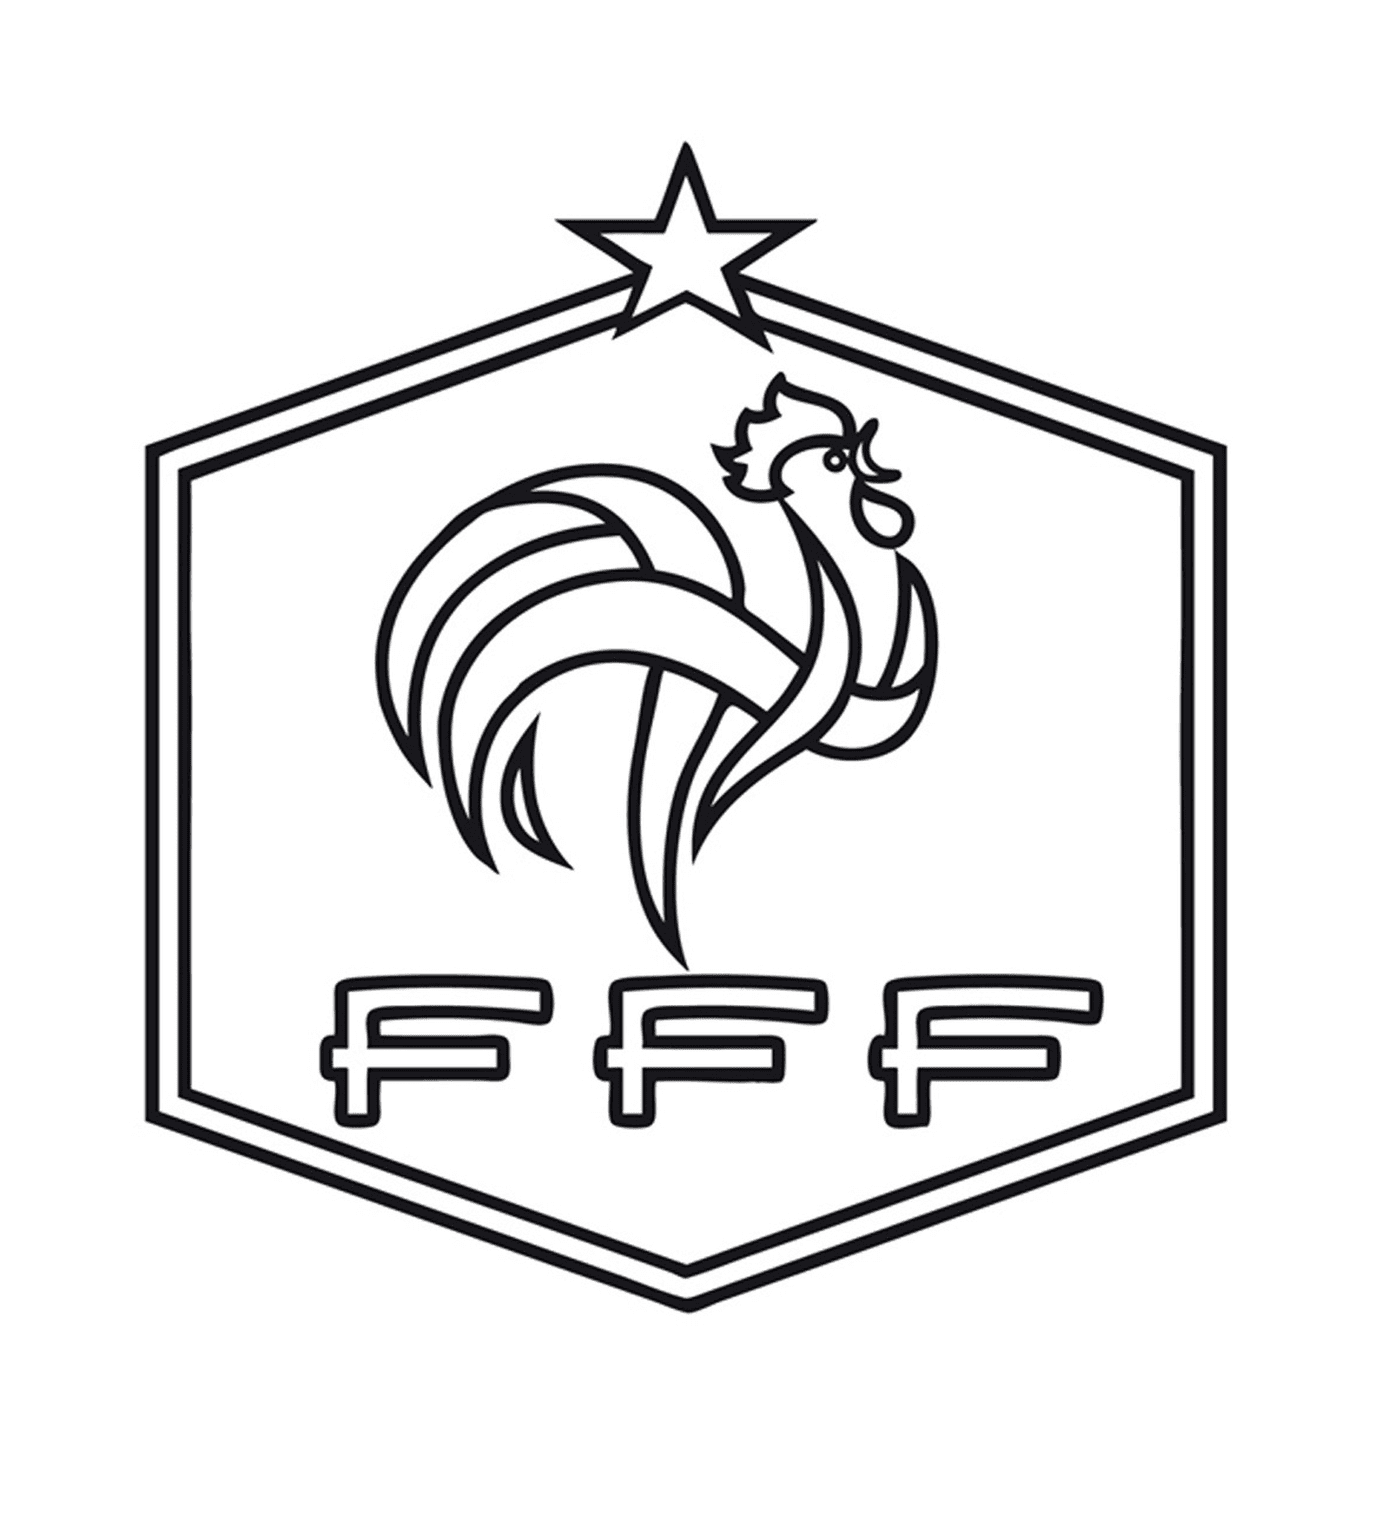  法国足球、公鸡和恒星 